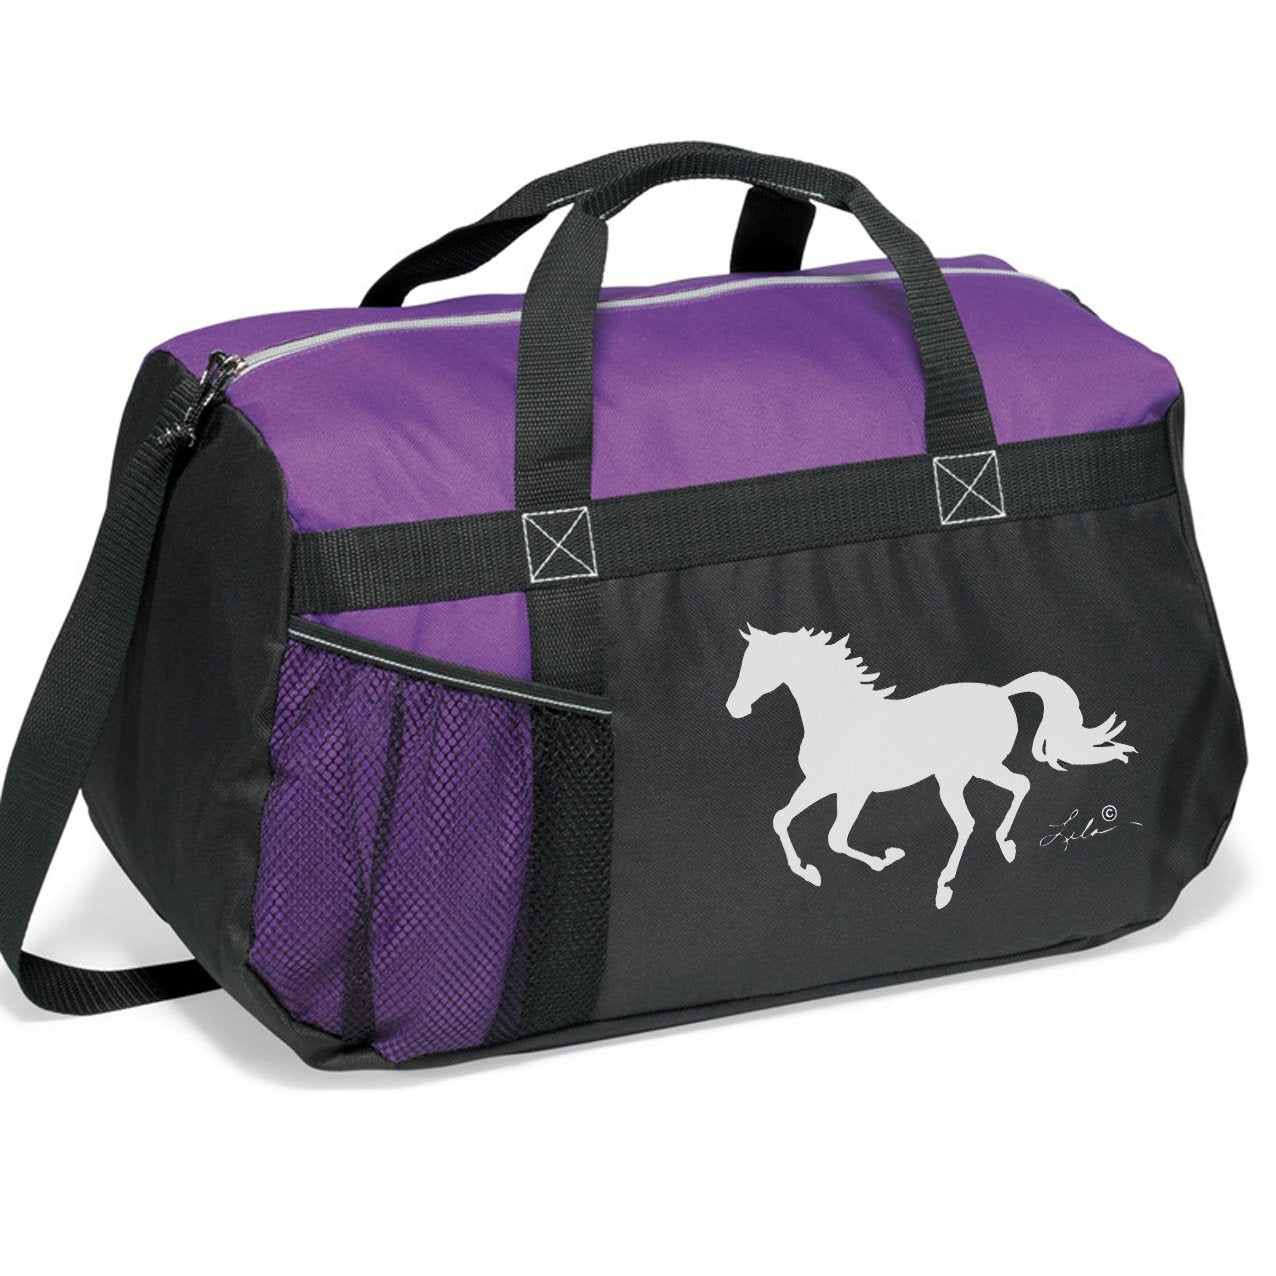 horse riding gear bag